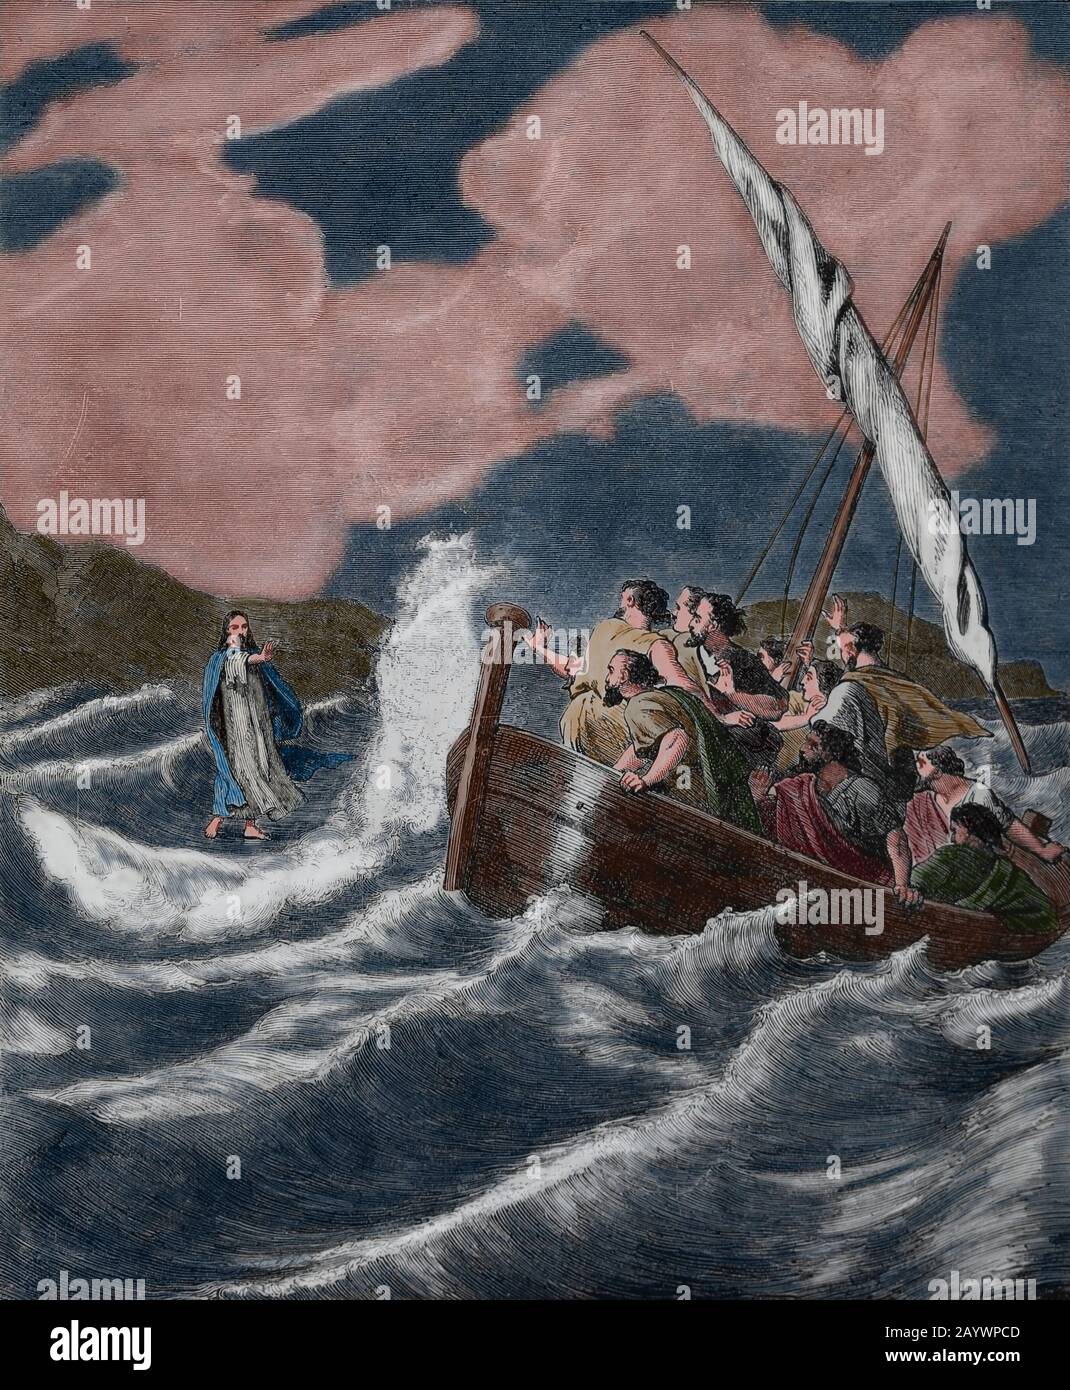 Neues Testamente. Jesus, der auf dem Wasser spazieren ging. Gravur, 19. Jahrhundert. Matthäus-Evangelium. Stockfoto